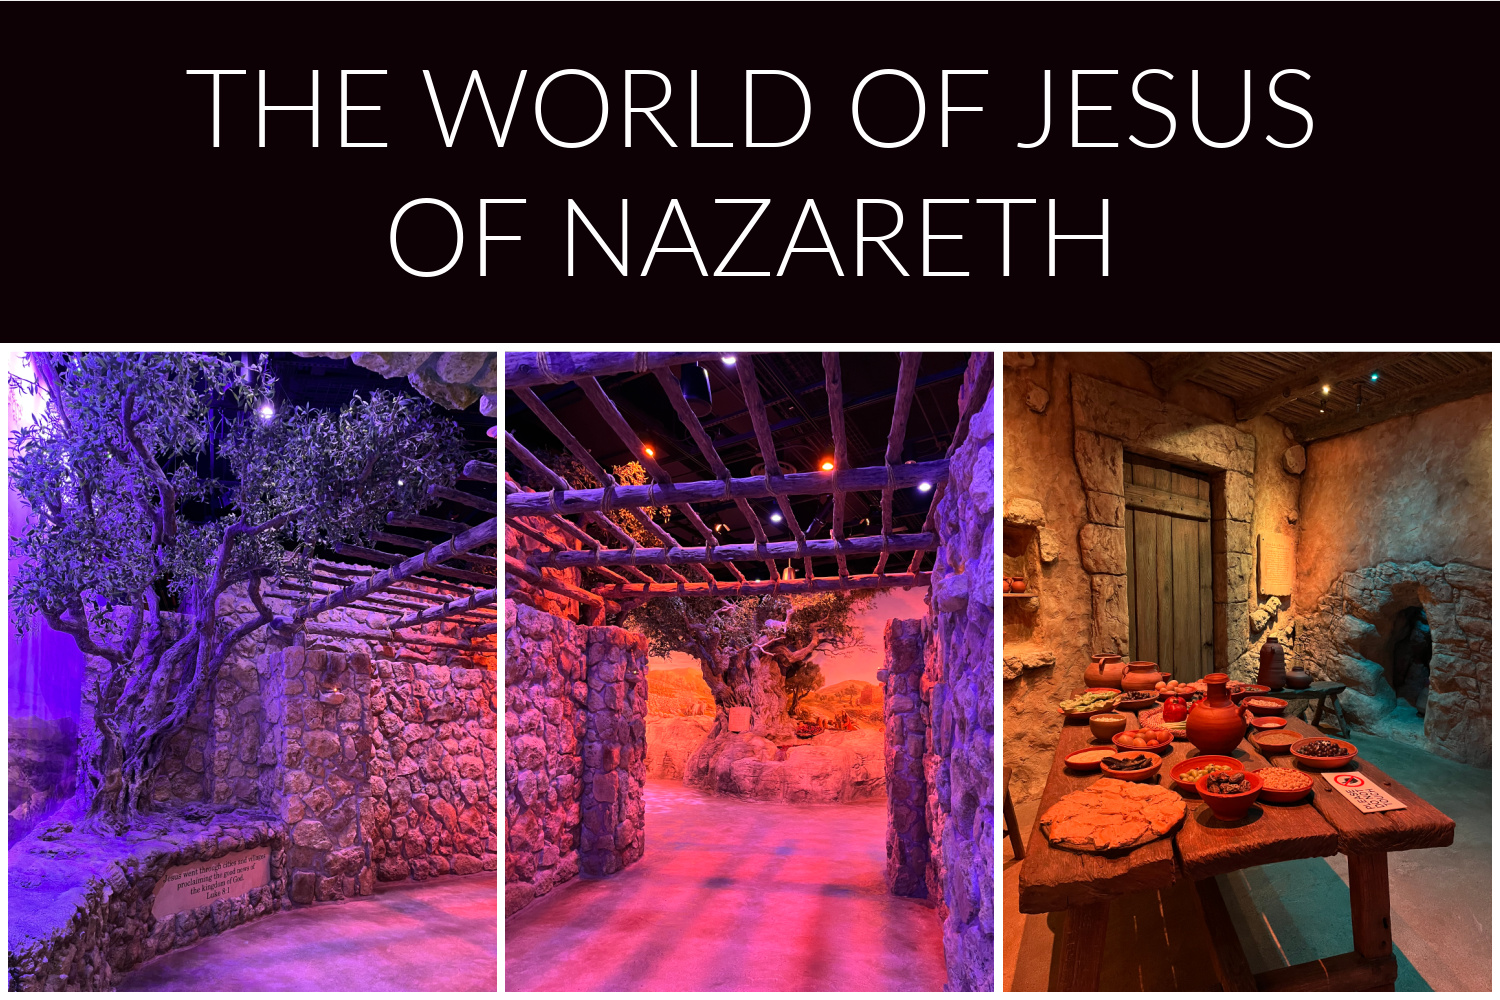 Museum of the Bible World of Jesus of Nazareth 3rd floor exhibit.